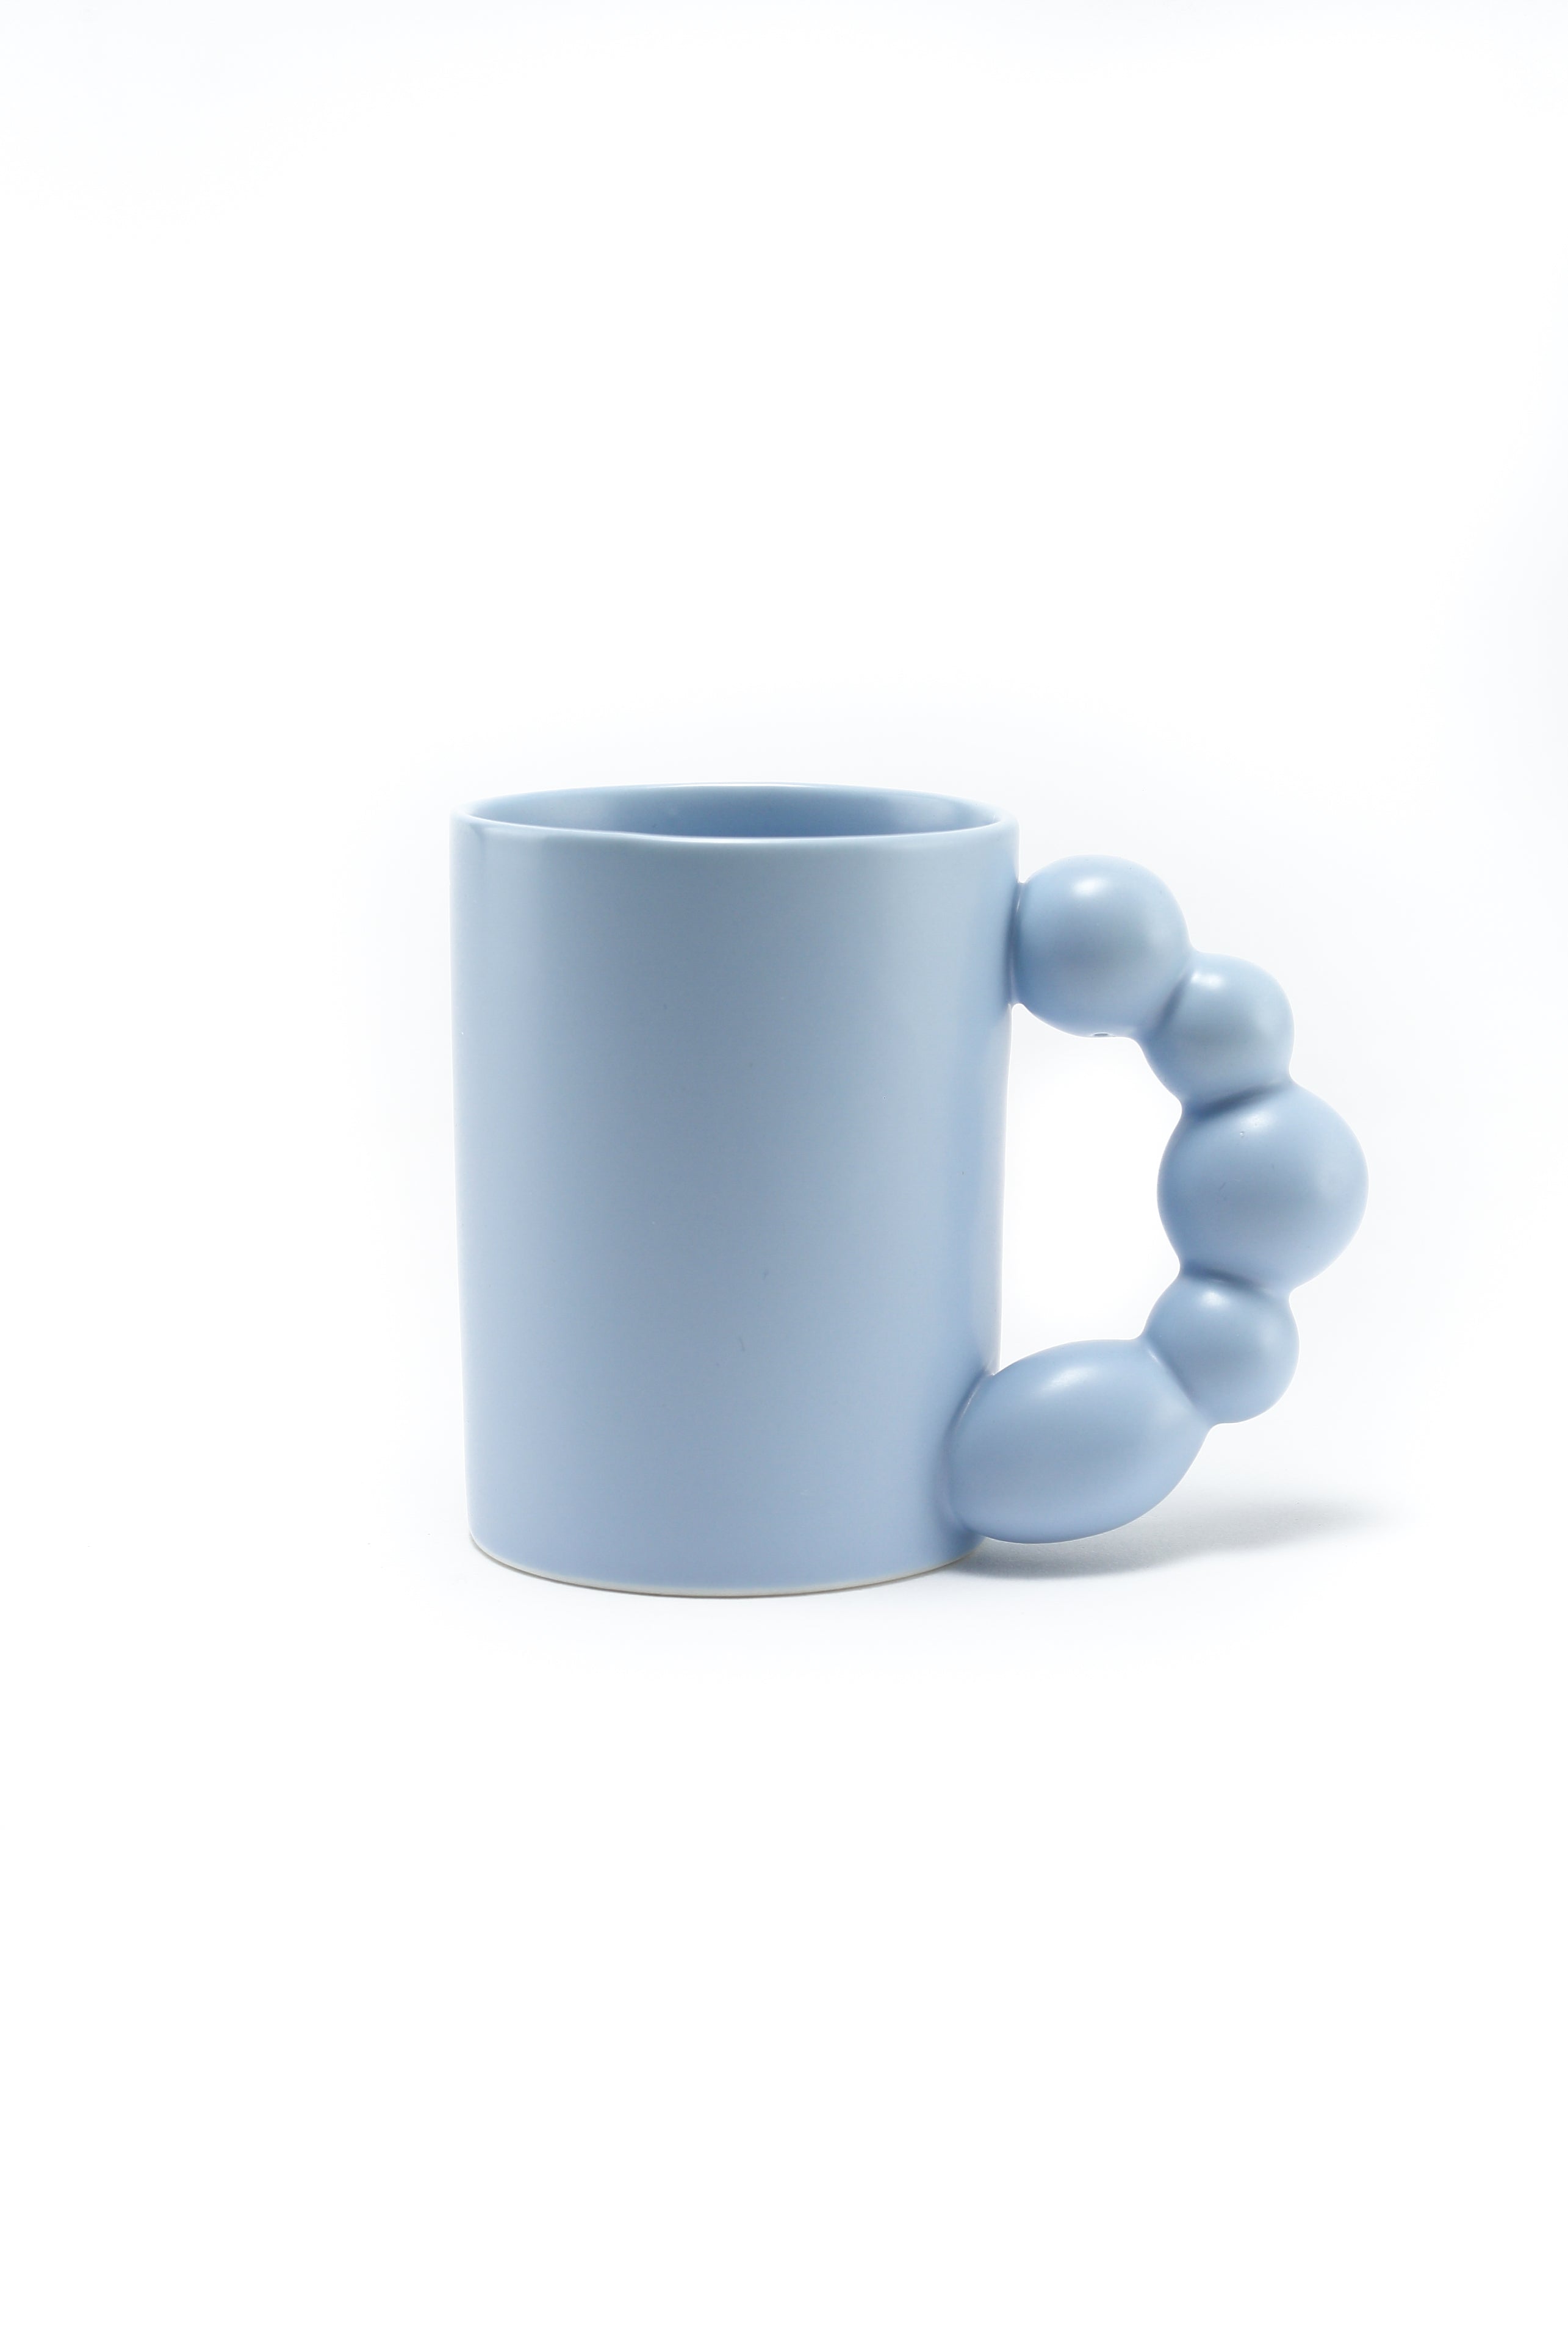 Pixa Pod chunky ball handled mug Baby Blue